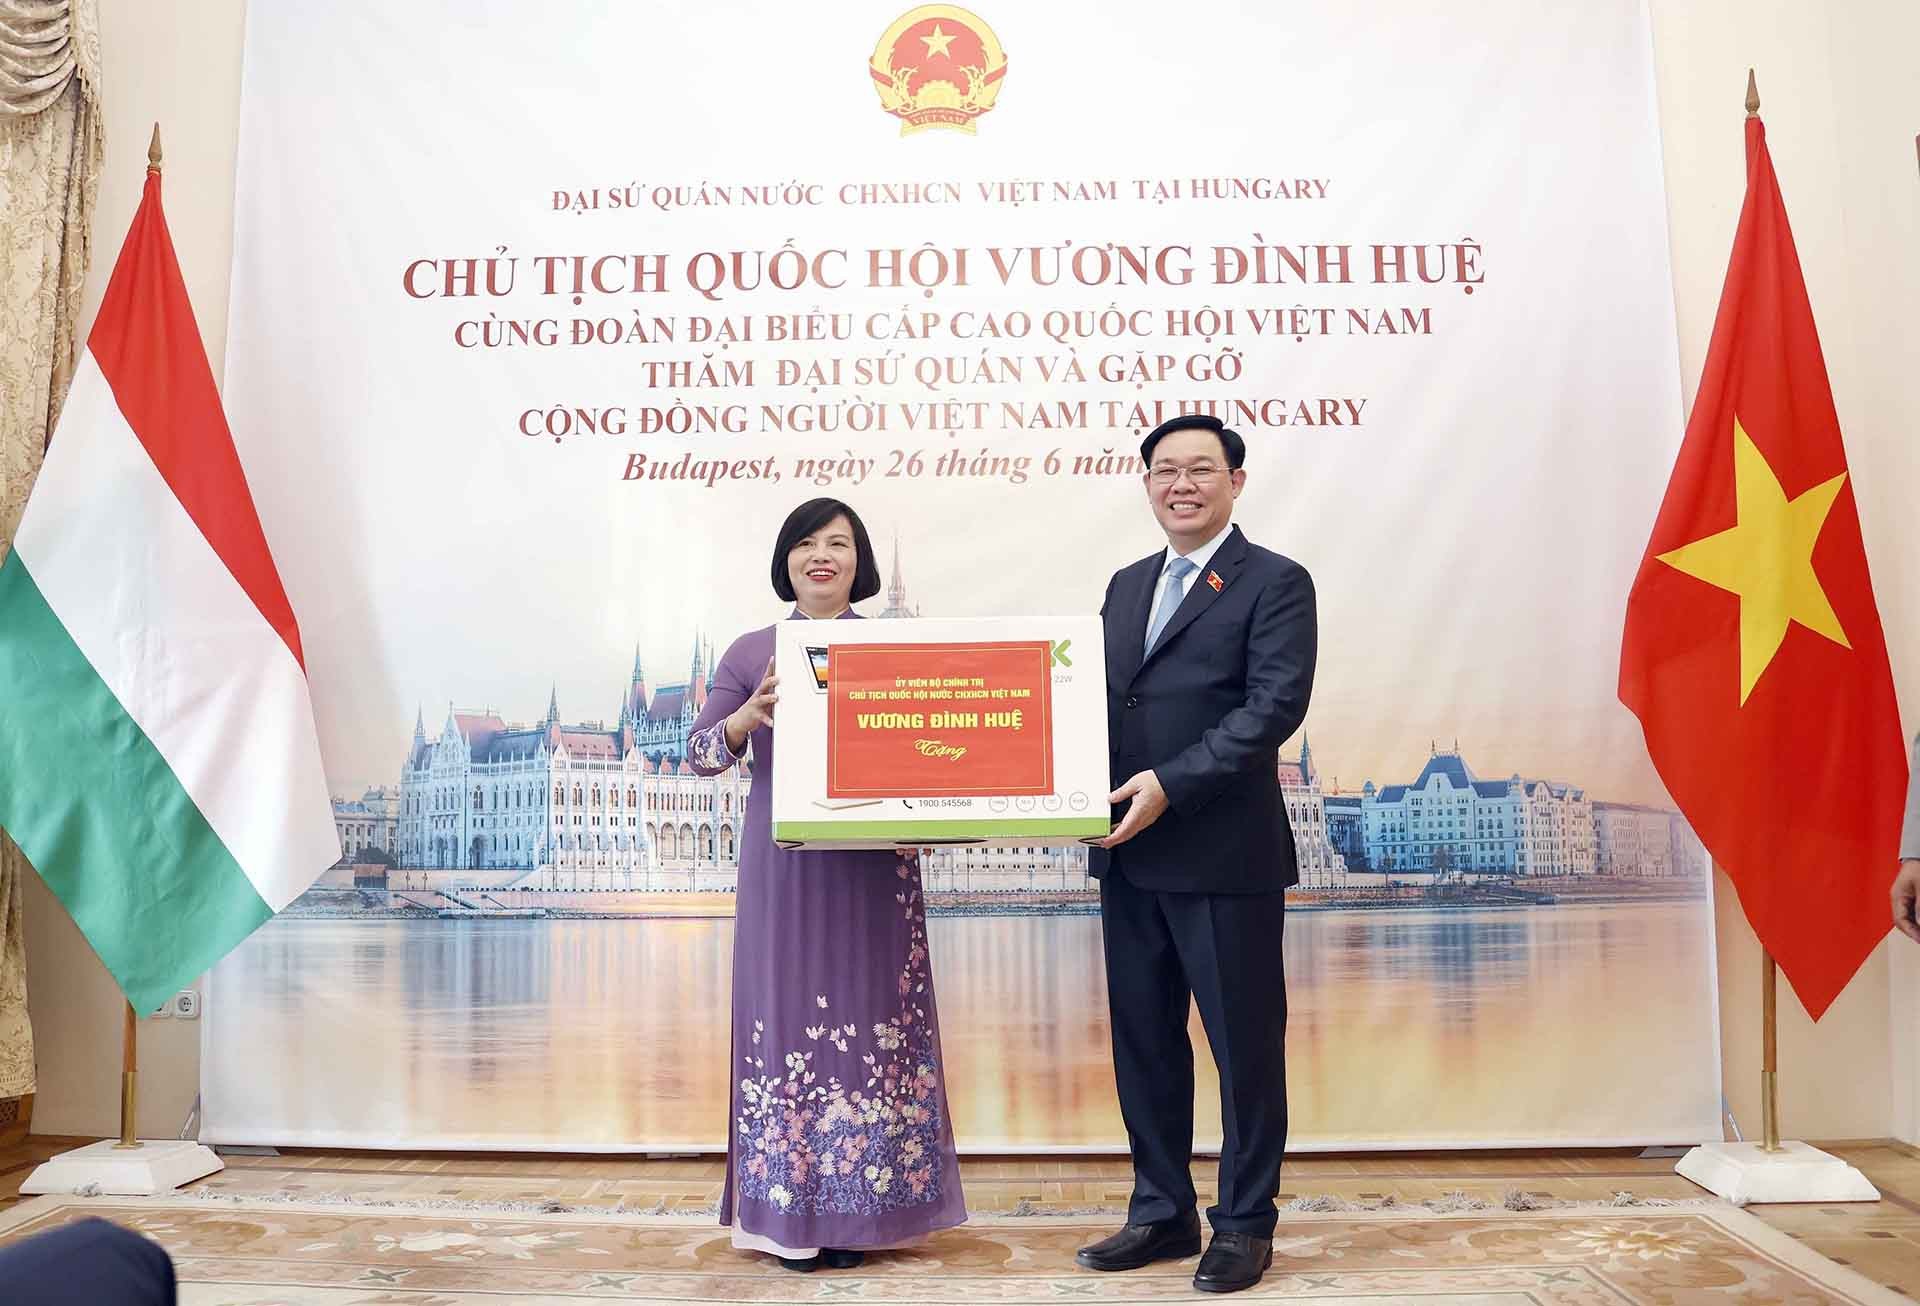 Chủ tịch Quốc hội Vương Đình Huệ tặng quà lưu niệm cho Đại sứ quán Việt Nam. (Nguồn: TTXVN)